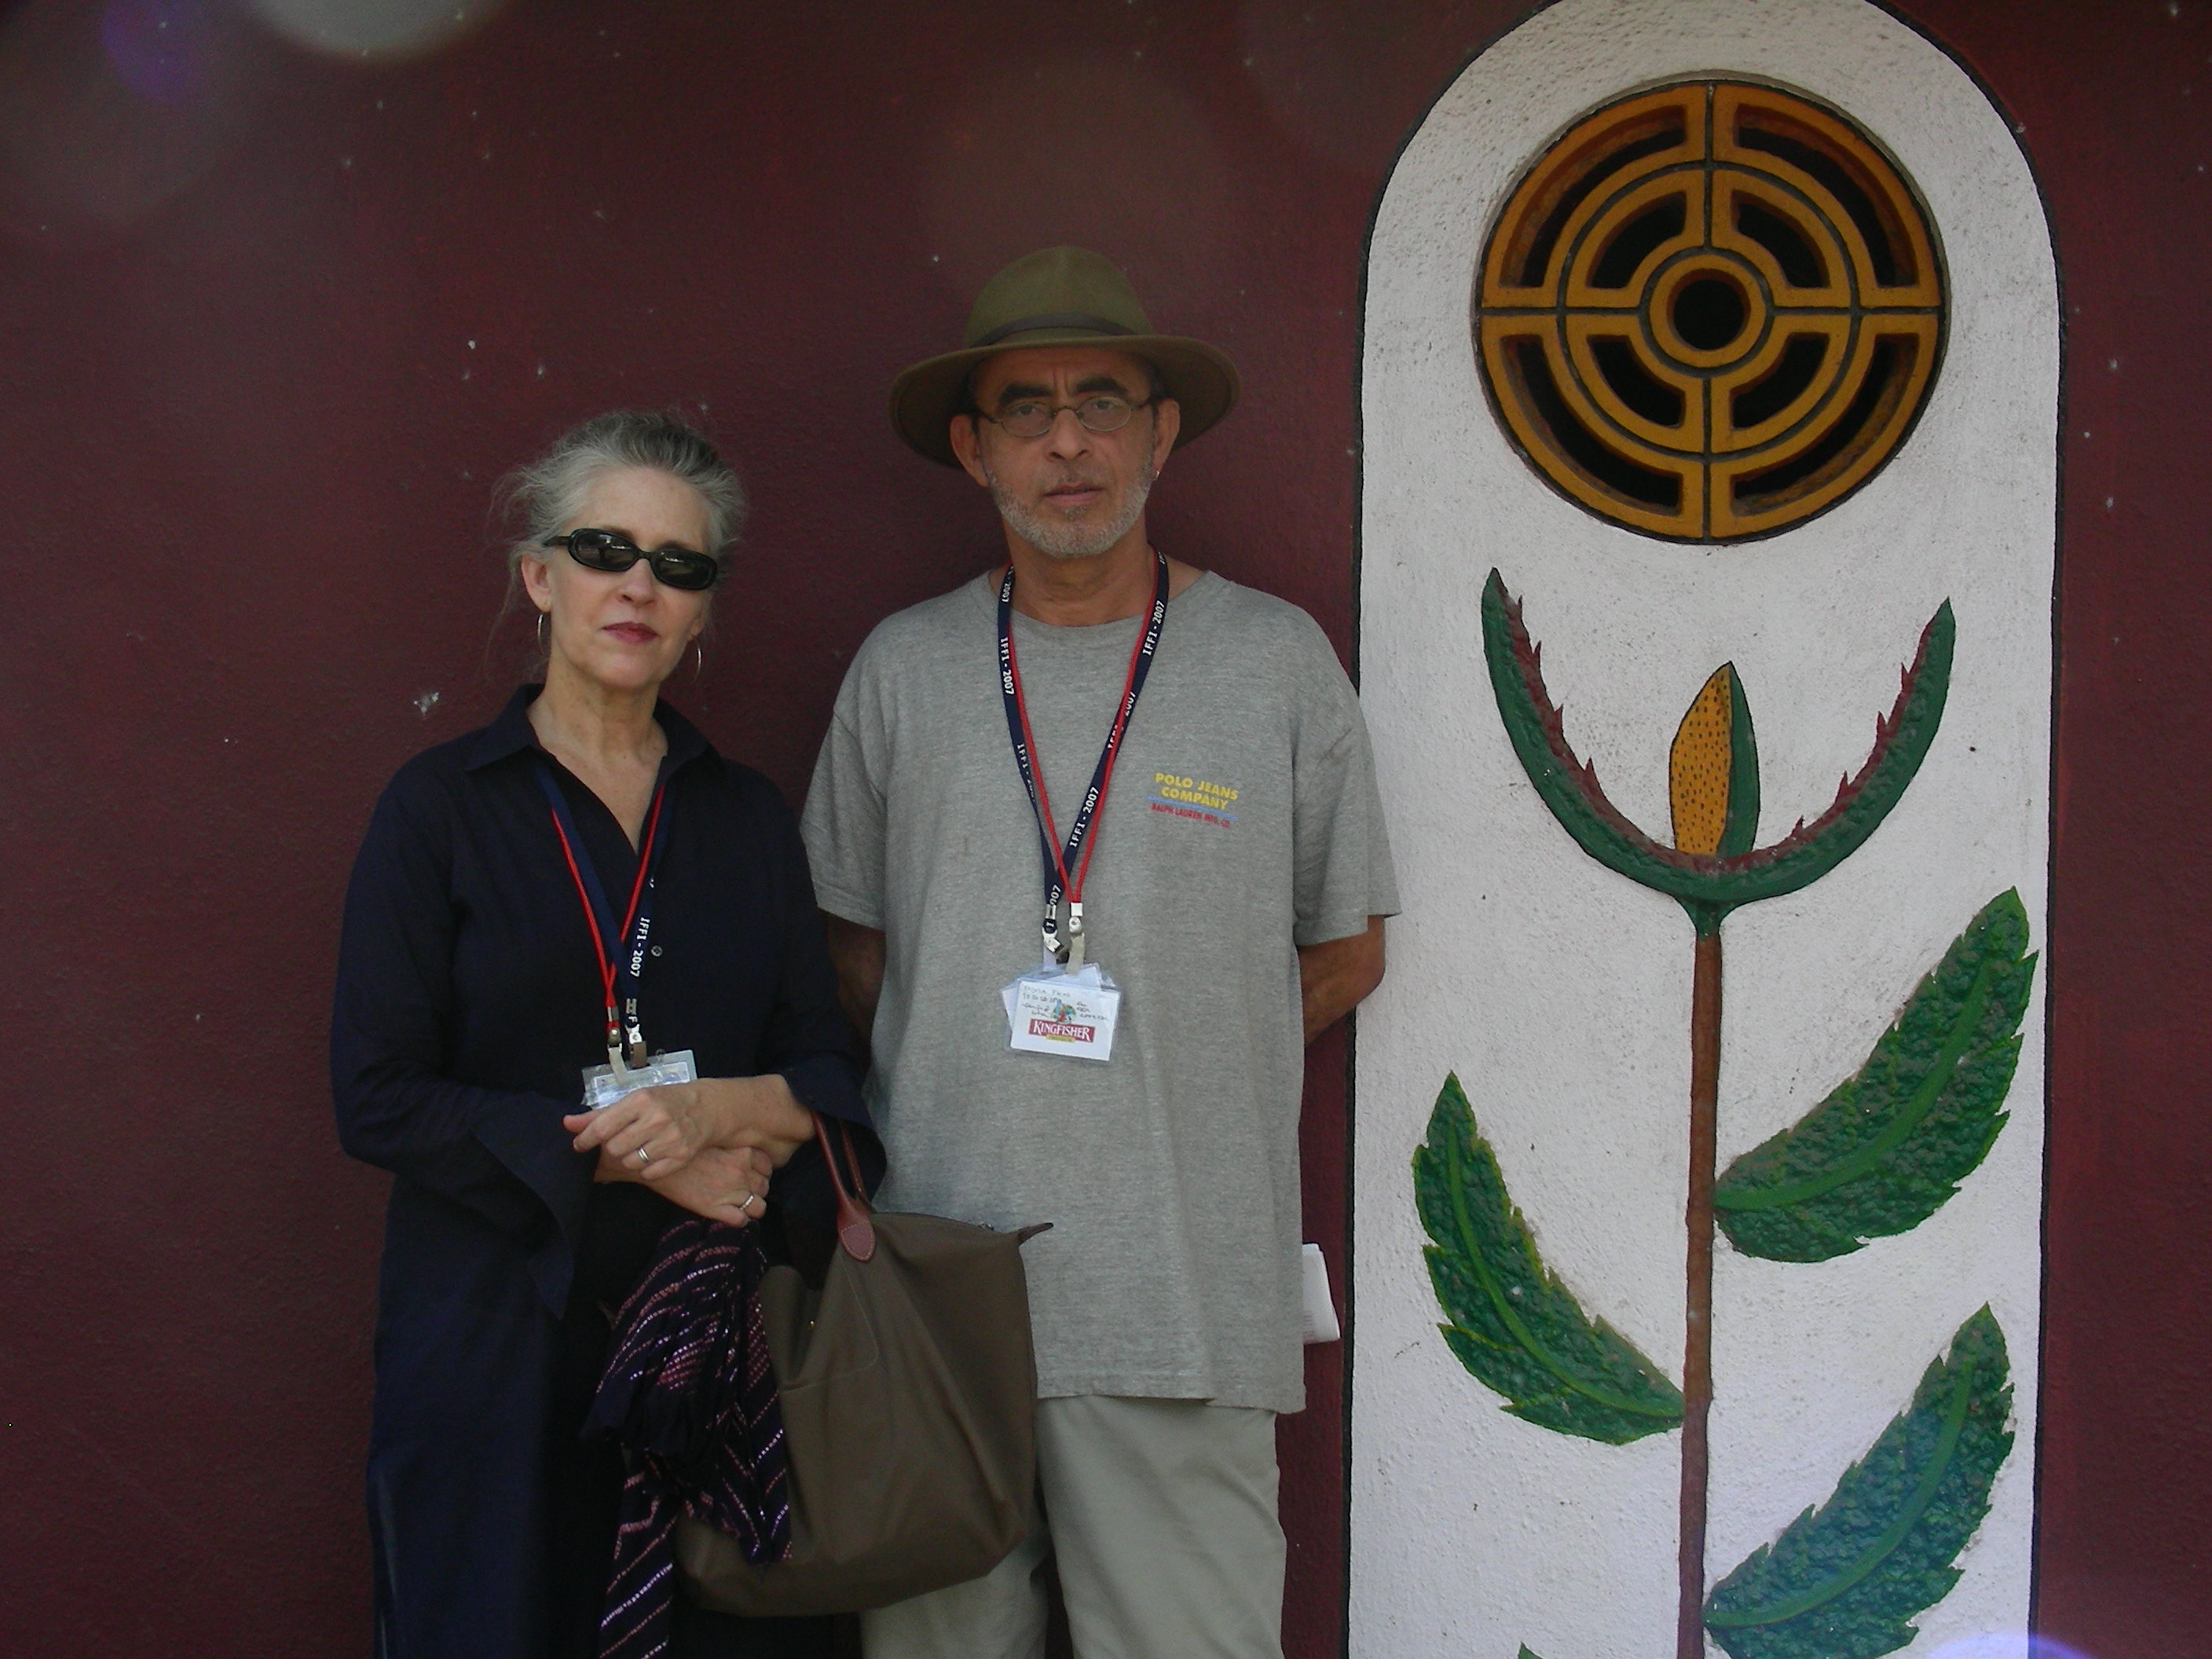 Ahmed Boulane & Dana schondelmeyer in Goa Film festival, India